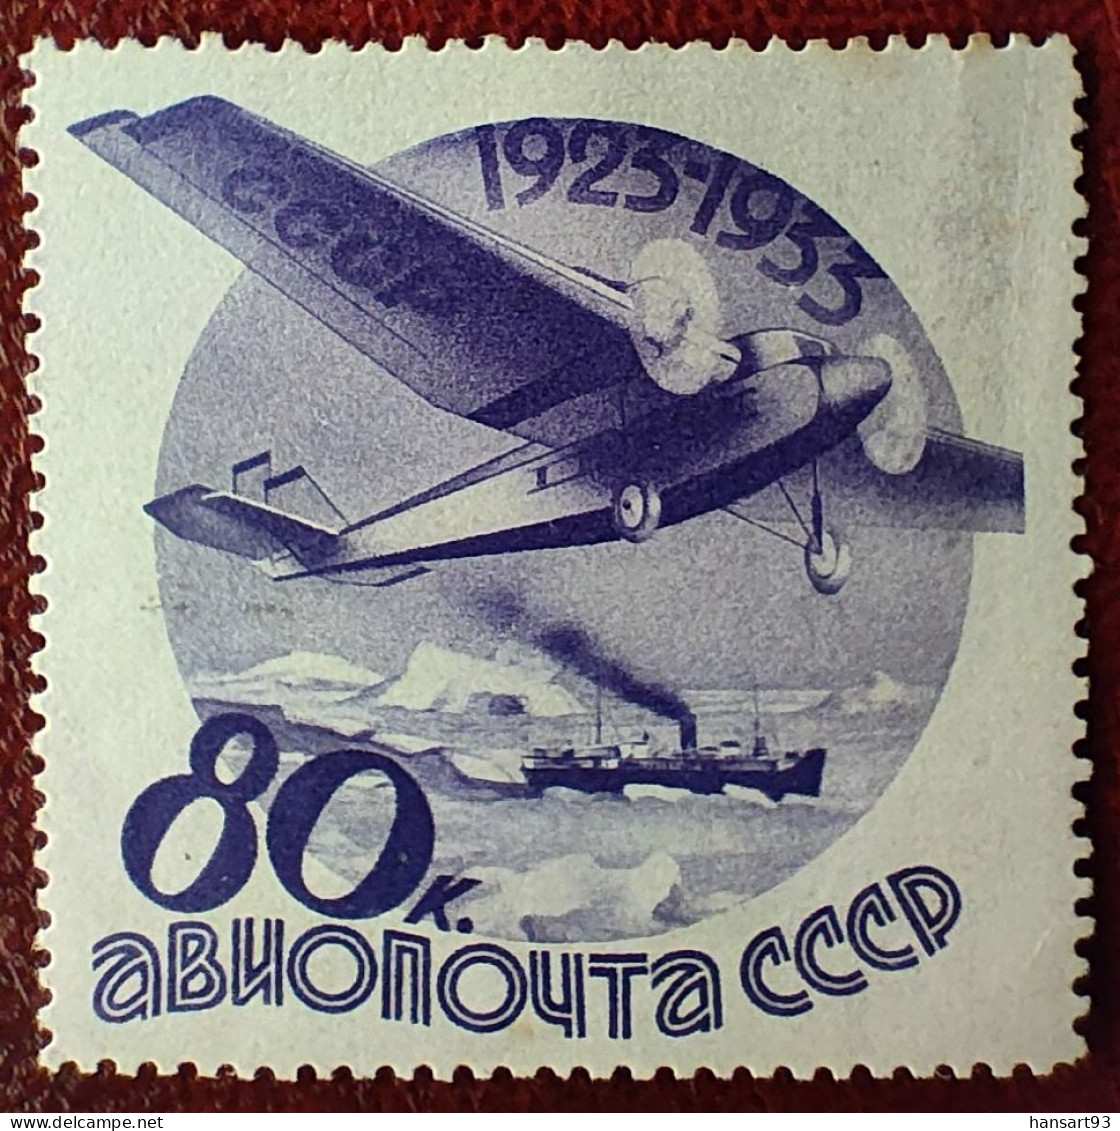 URSS Rare Poste Aérienne N° 45 N* TTB ! Cote 2020 : 50,00 Euros ! A Voir Absolument !! - Ongebruikt